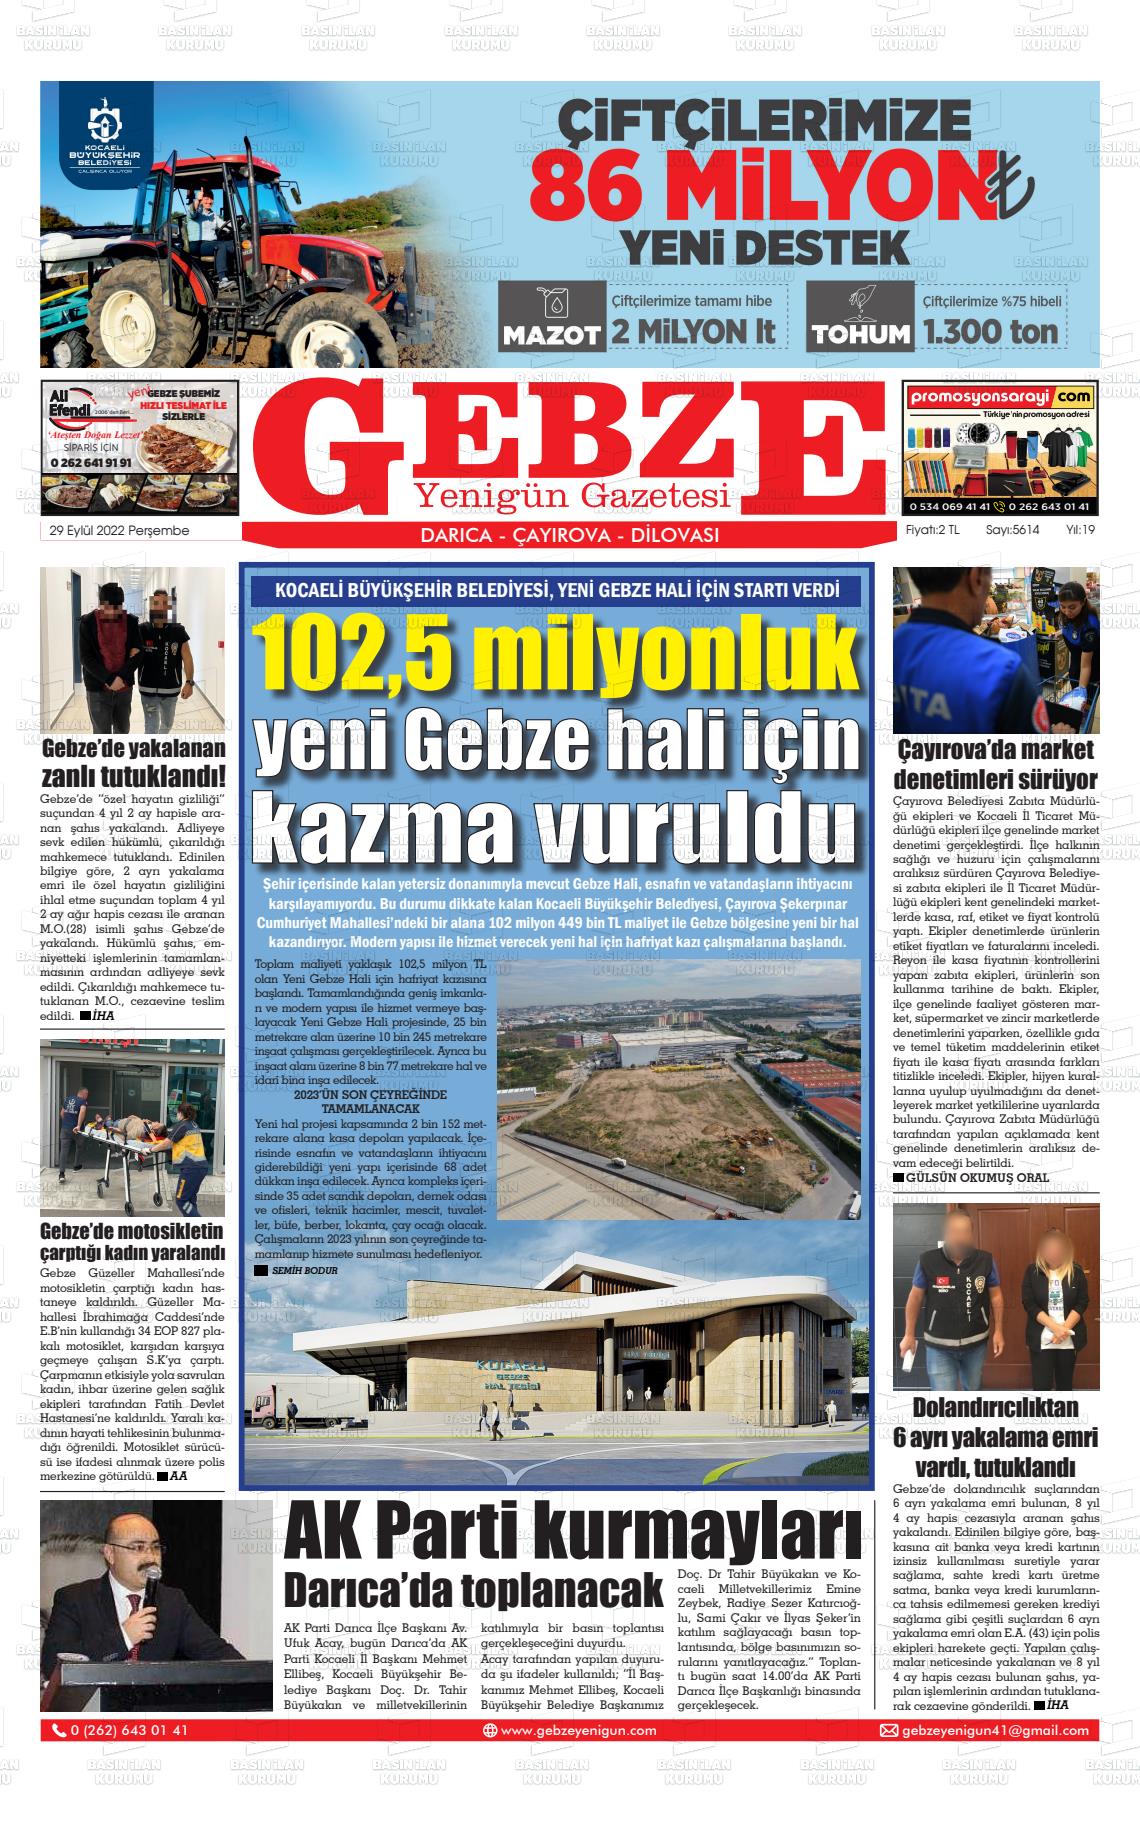 29 Eylül 2022 Gebze Yenigün Gazete Manşeti